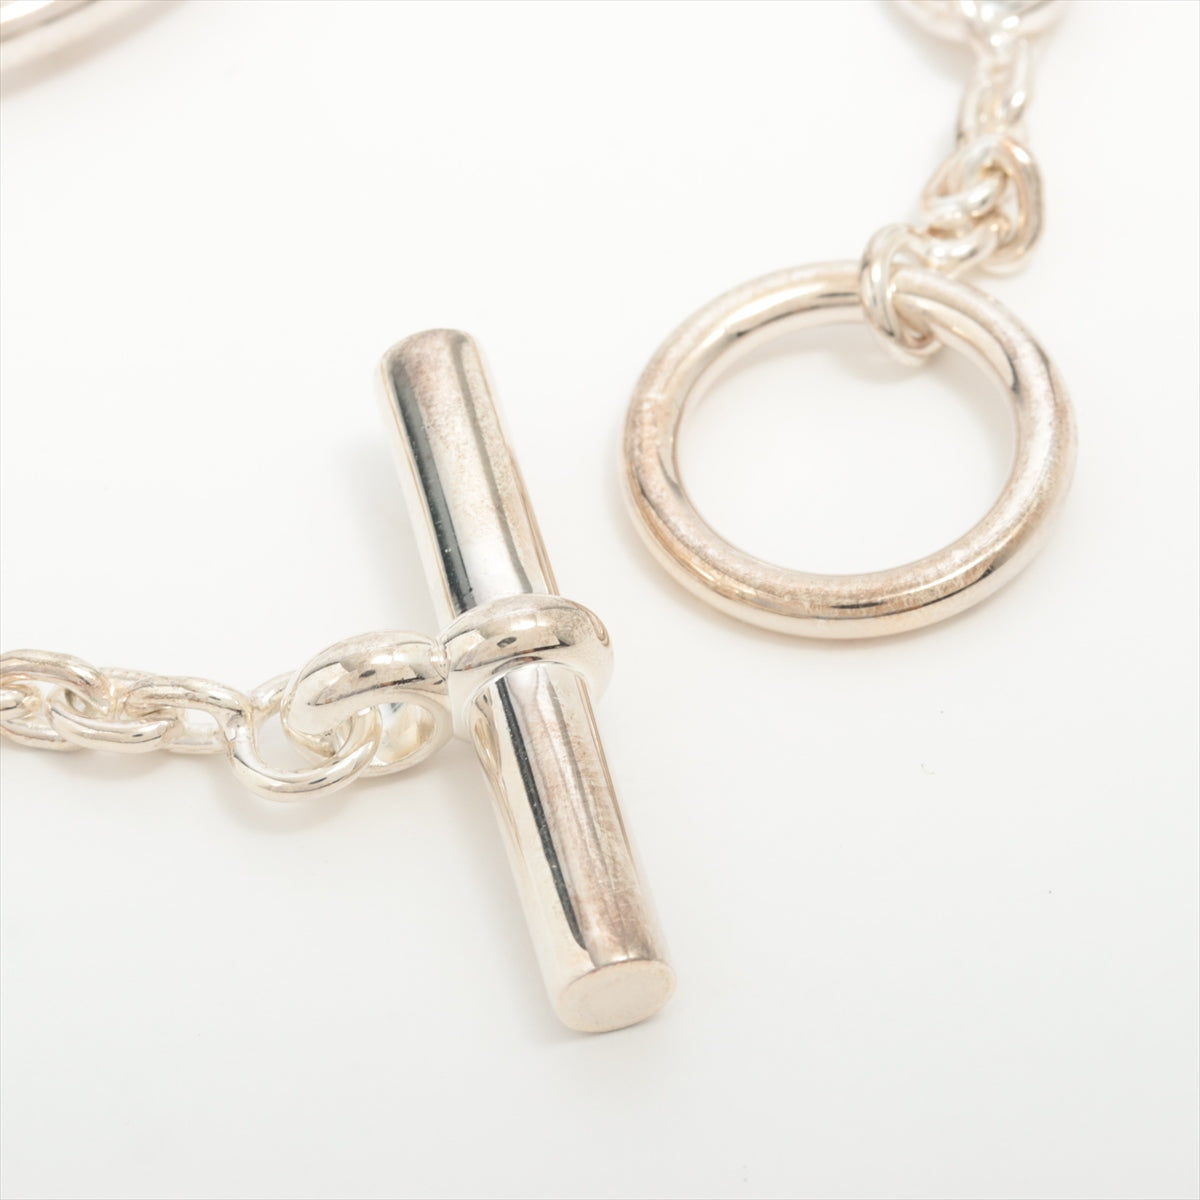 Hermès Chaîne d'Ancre Farandole Bracelet ST 925 25.5g Silver